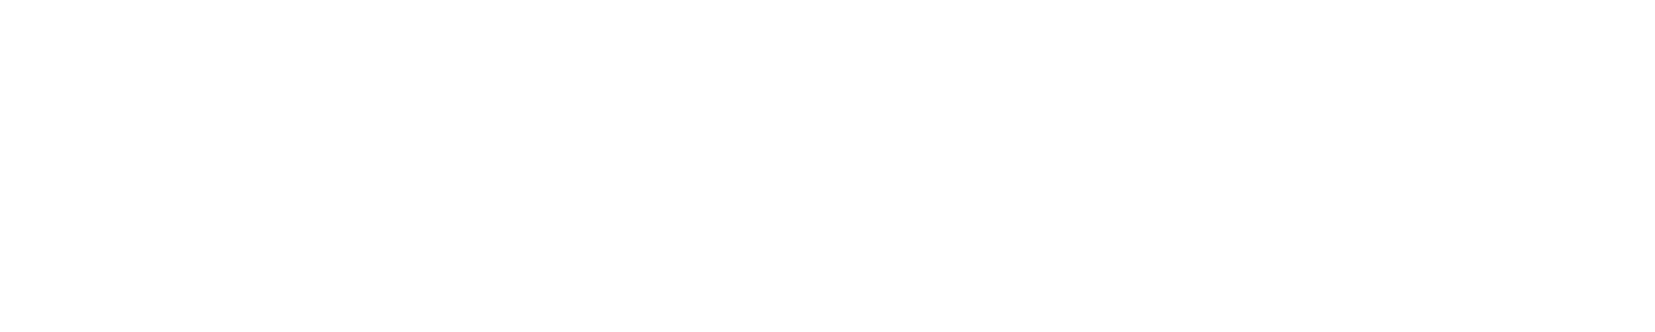 Resultco Logo 2022